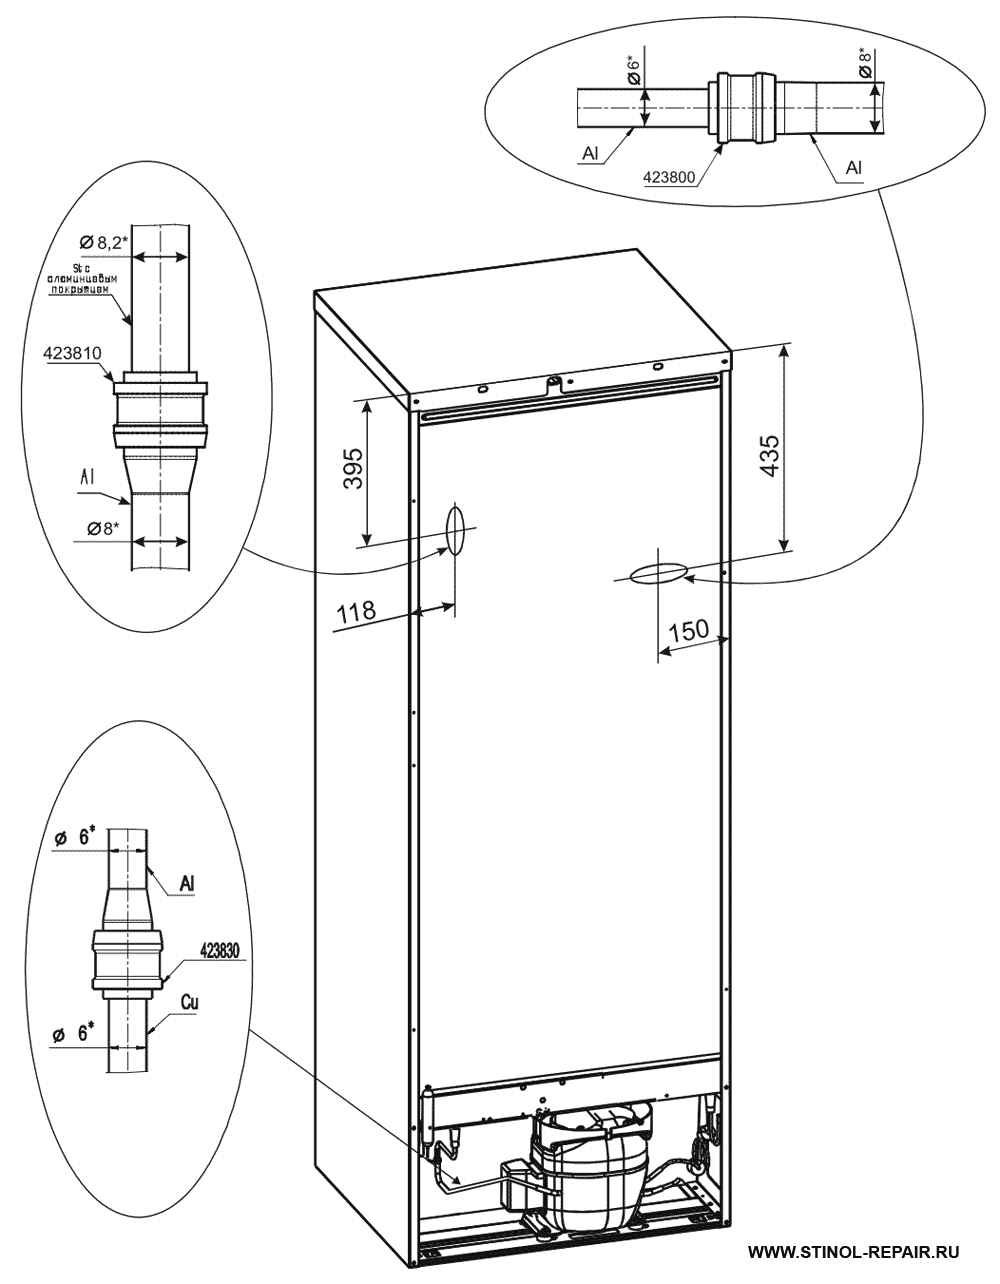 Расположение локринговых соединений холодильника Стинол-242Q - второй вариант.